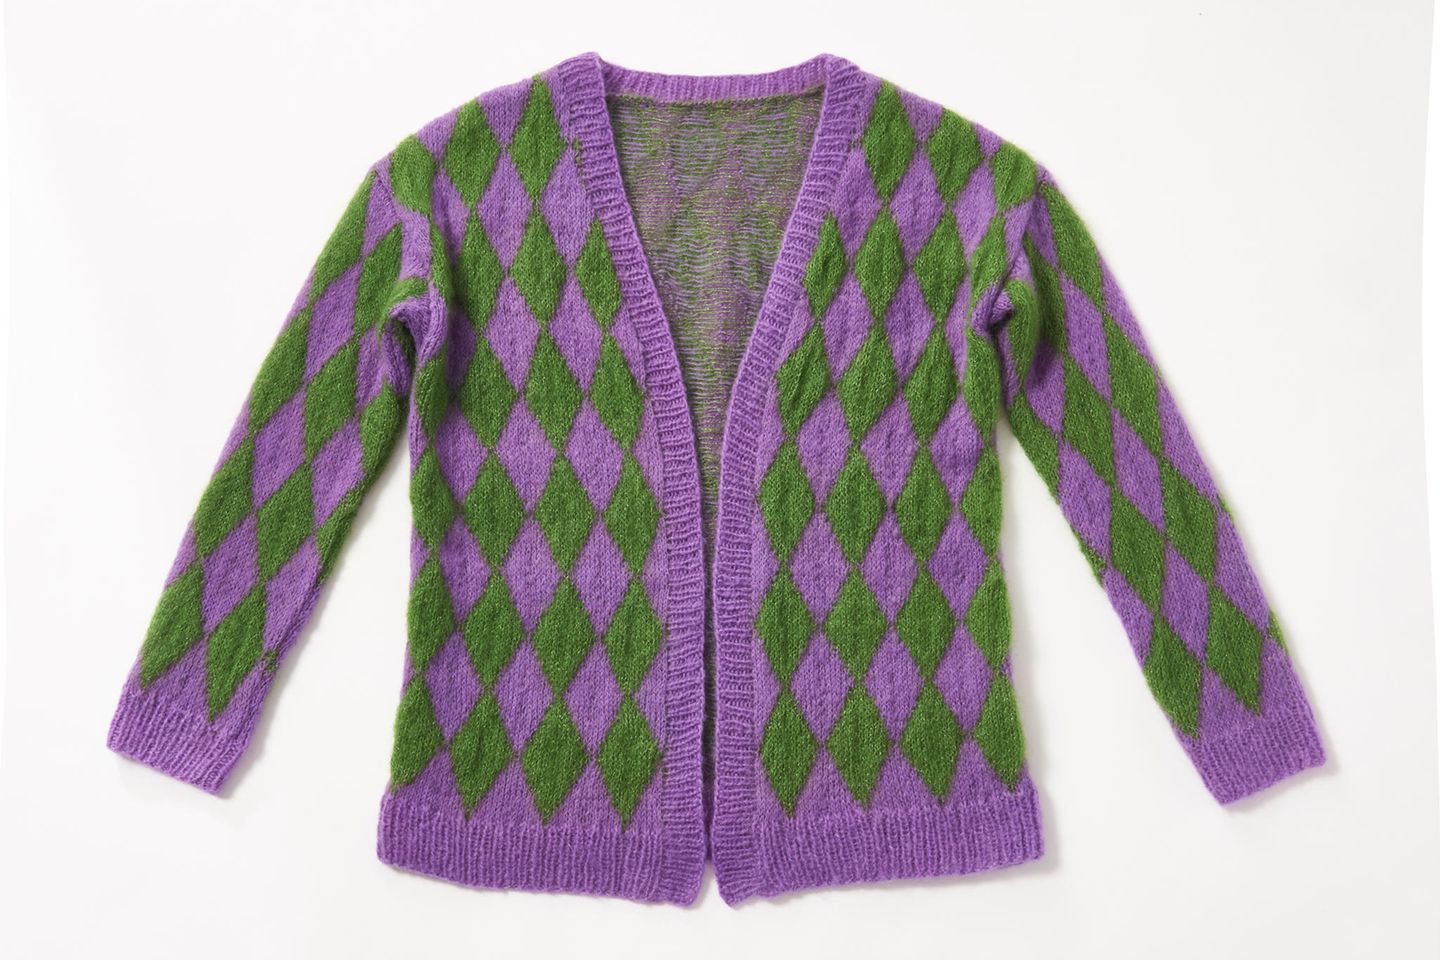 Rhombenjacke stricken: Strickjacke mit grünen und lila Rauten